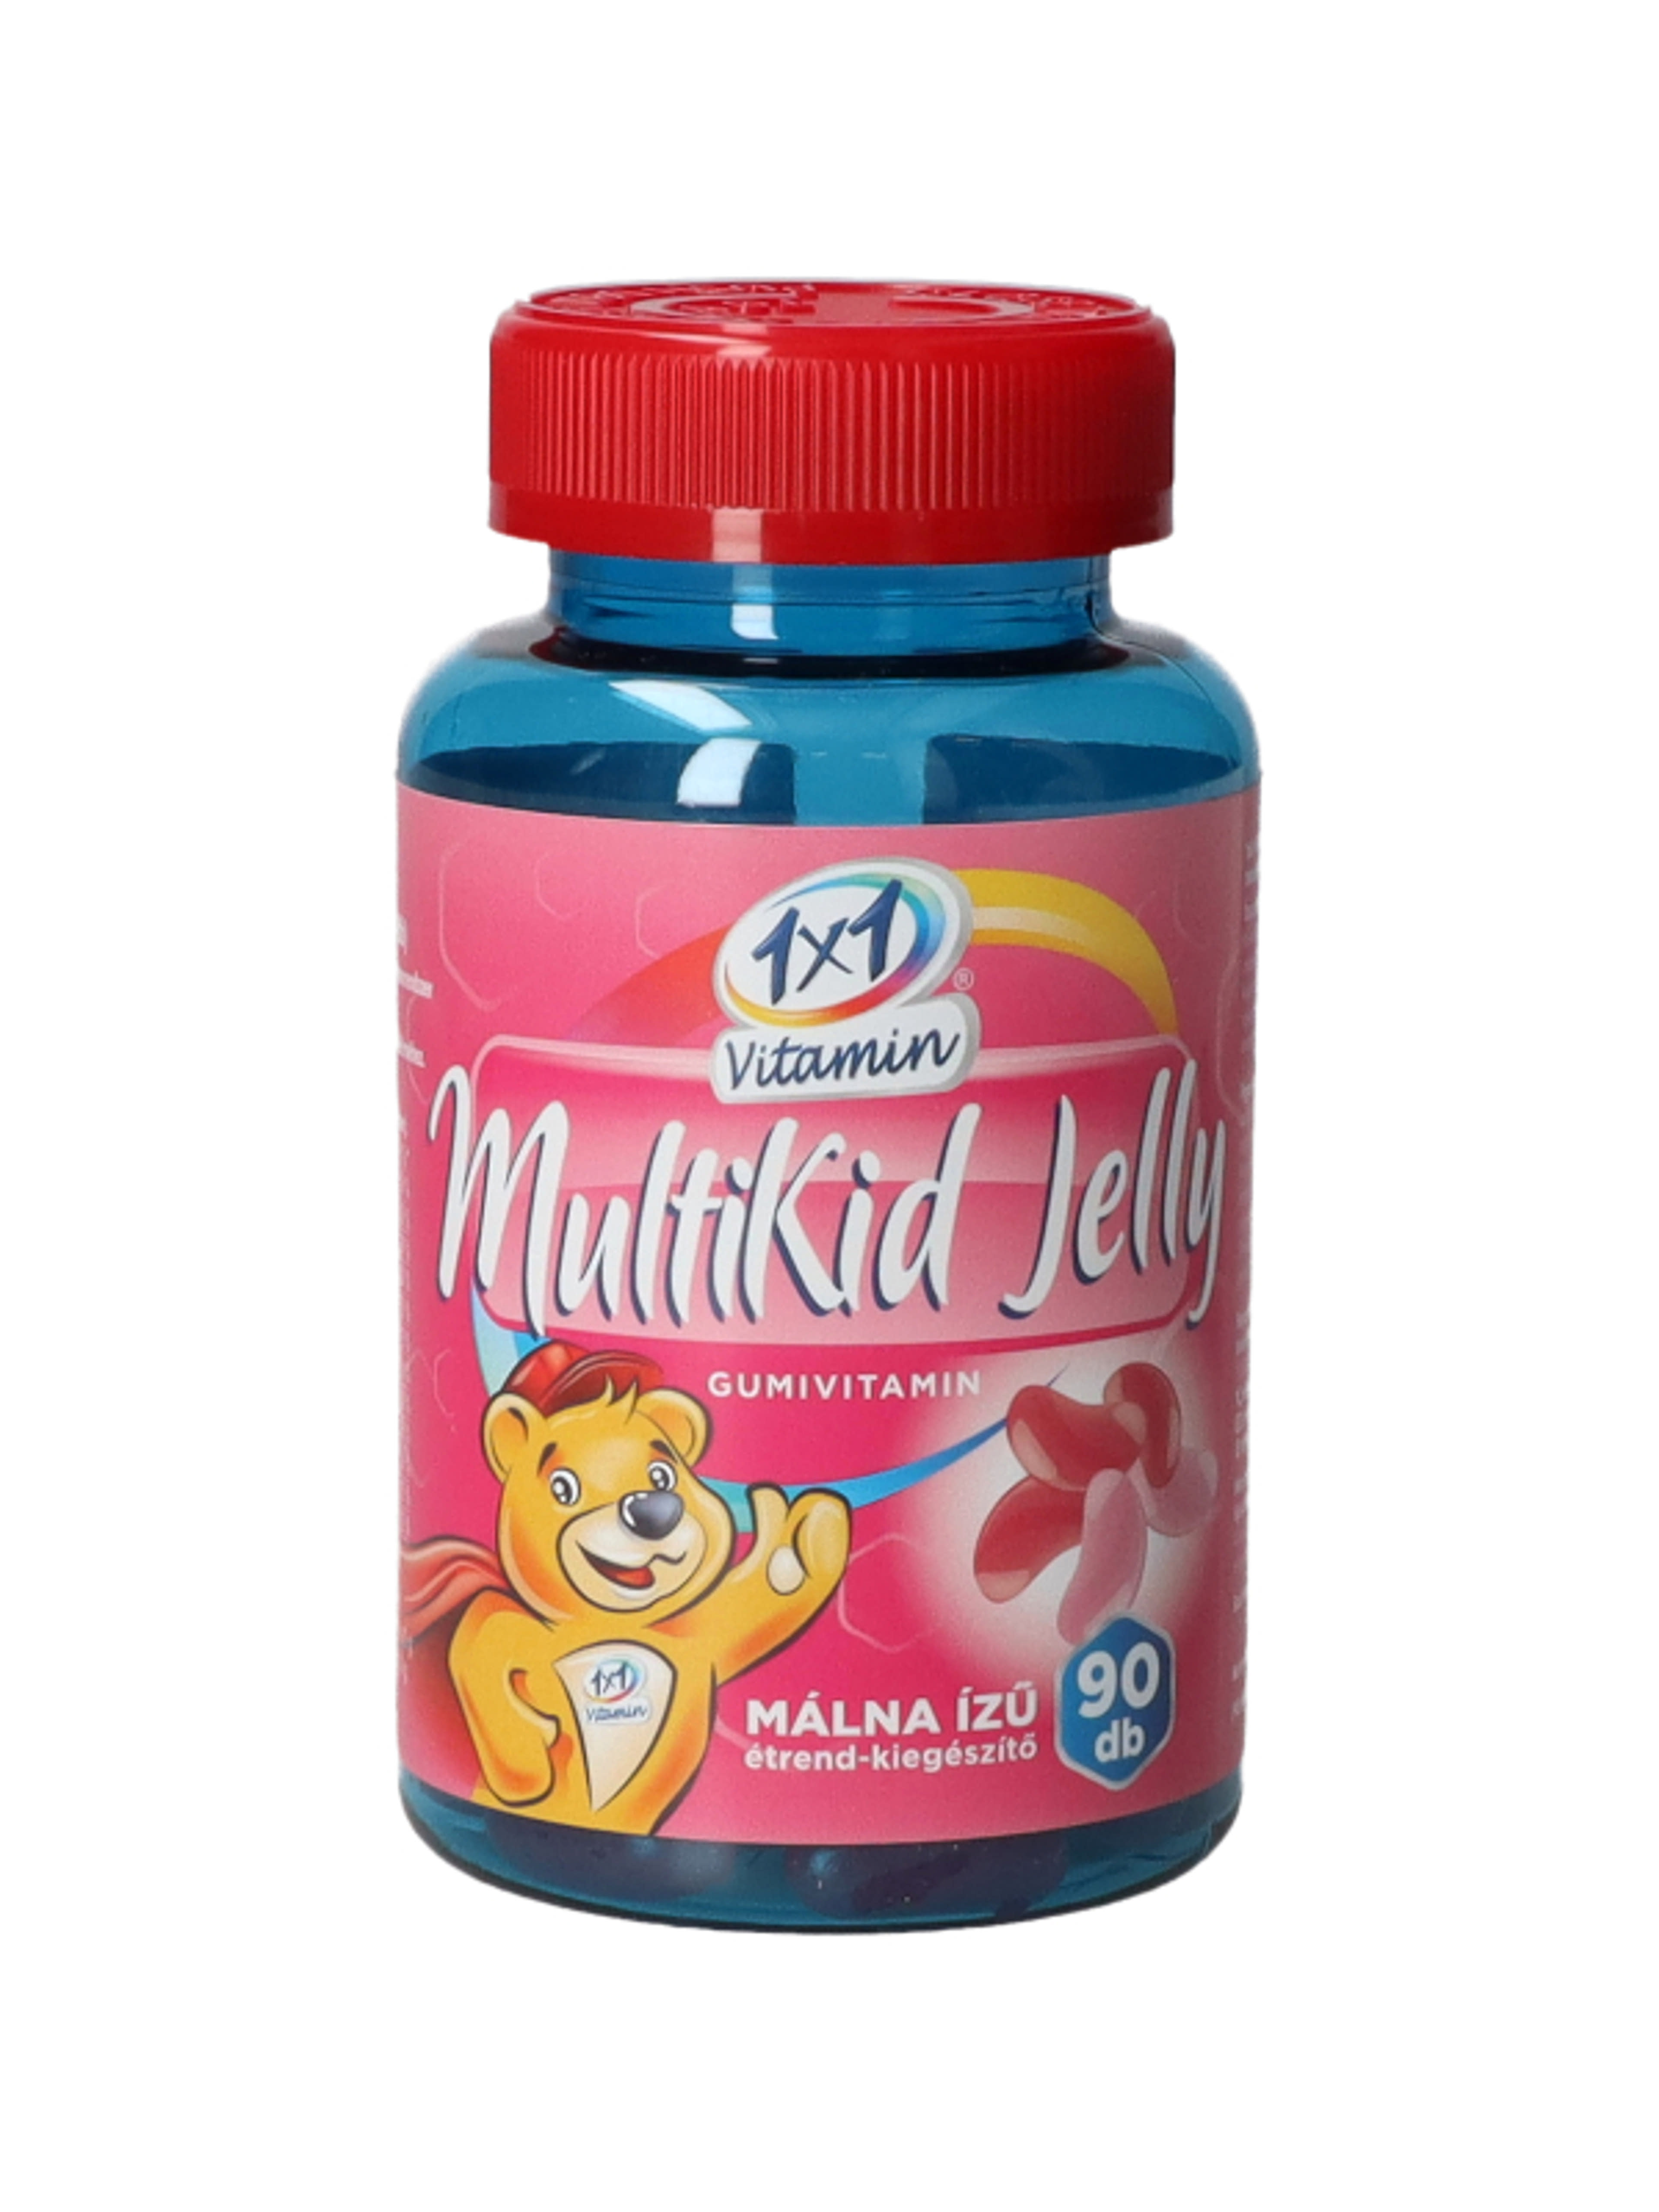 1x1 Vitamin Jelly Multikid gumivitamin - 90 db